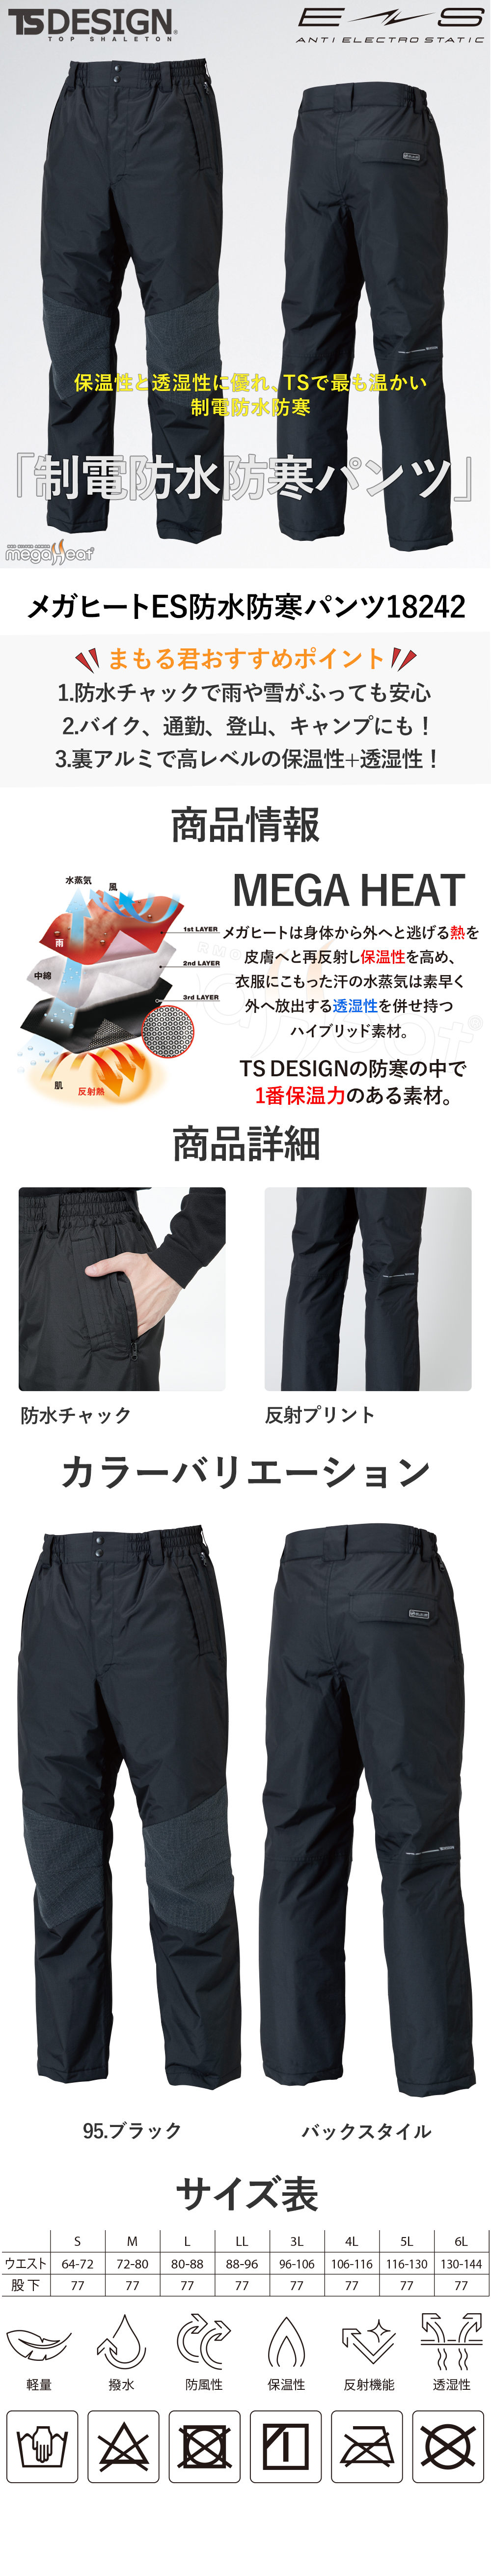 藤和 TS Design メガヒートES 防水防寒パンツ 防寒パンツ ワークパンツ